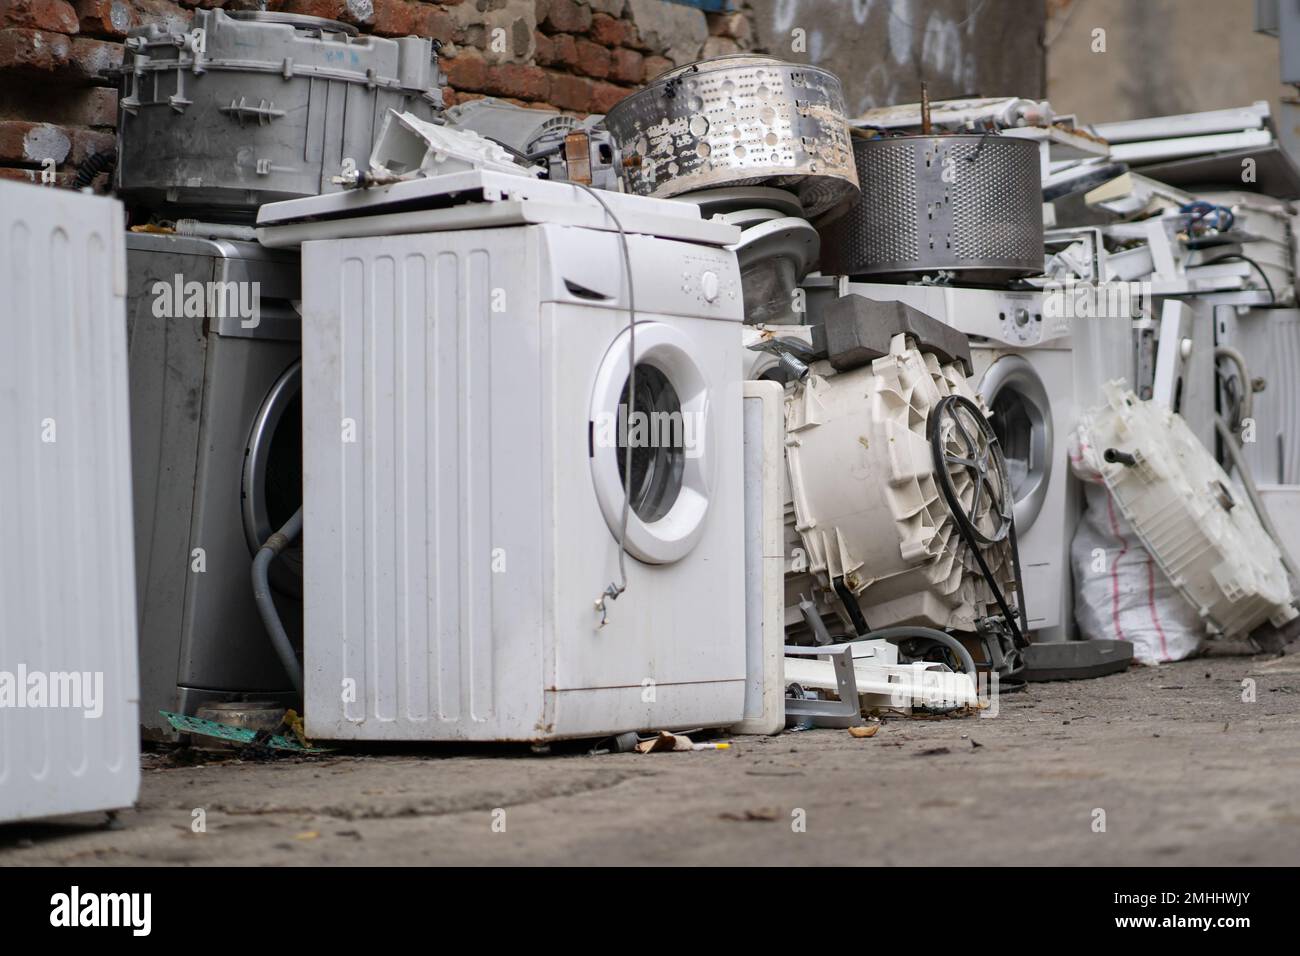 Alte Waschmaschinen und andere kaputte Haushaltsgeräte auf dem Schrottplatz  Stockfotografie - Alamy